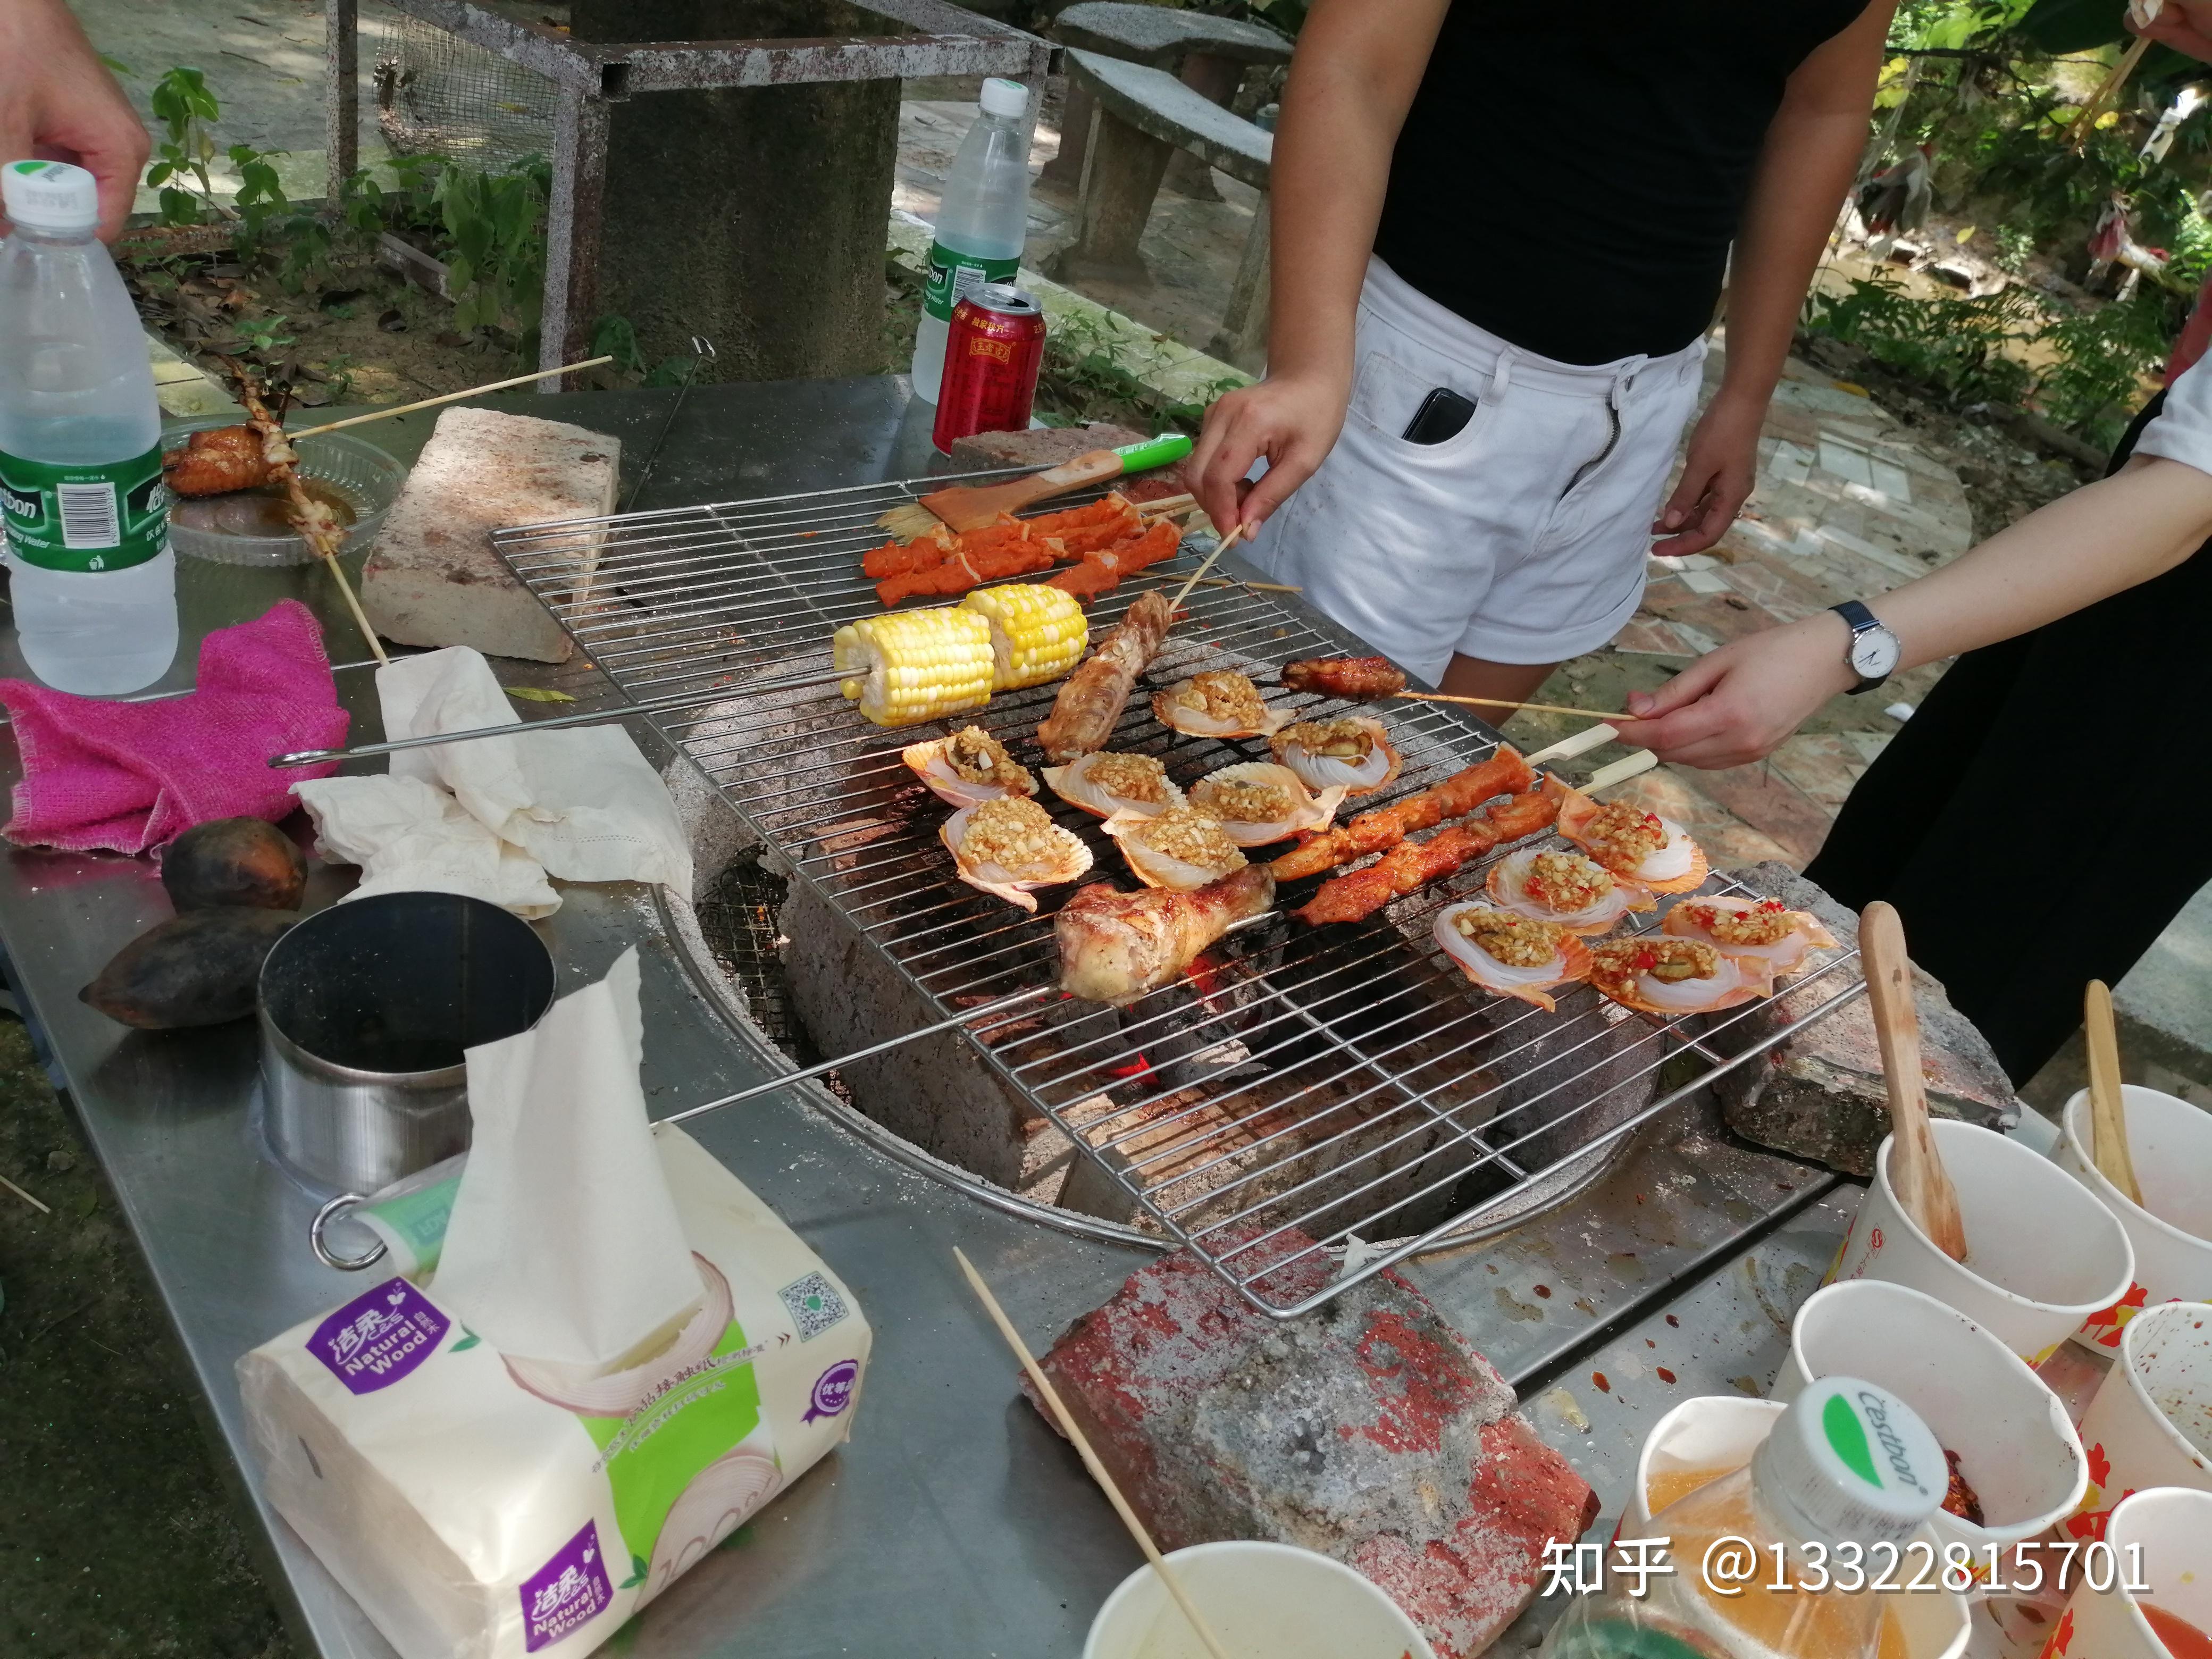 广州周边端午小长假周末农家乐烧烤好去处